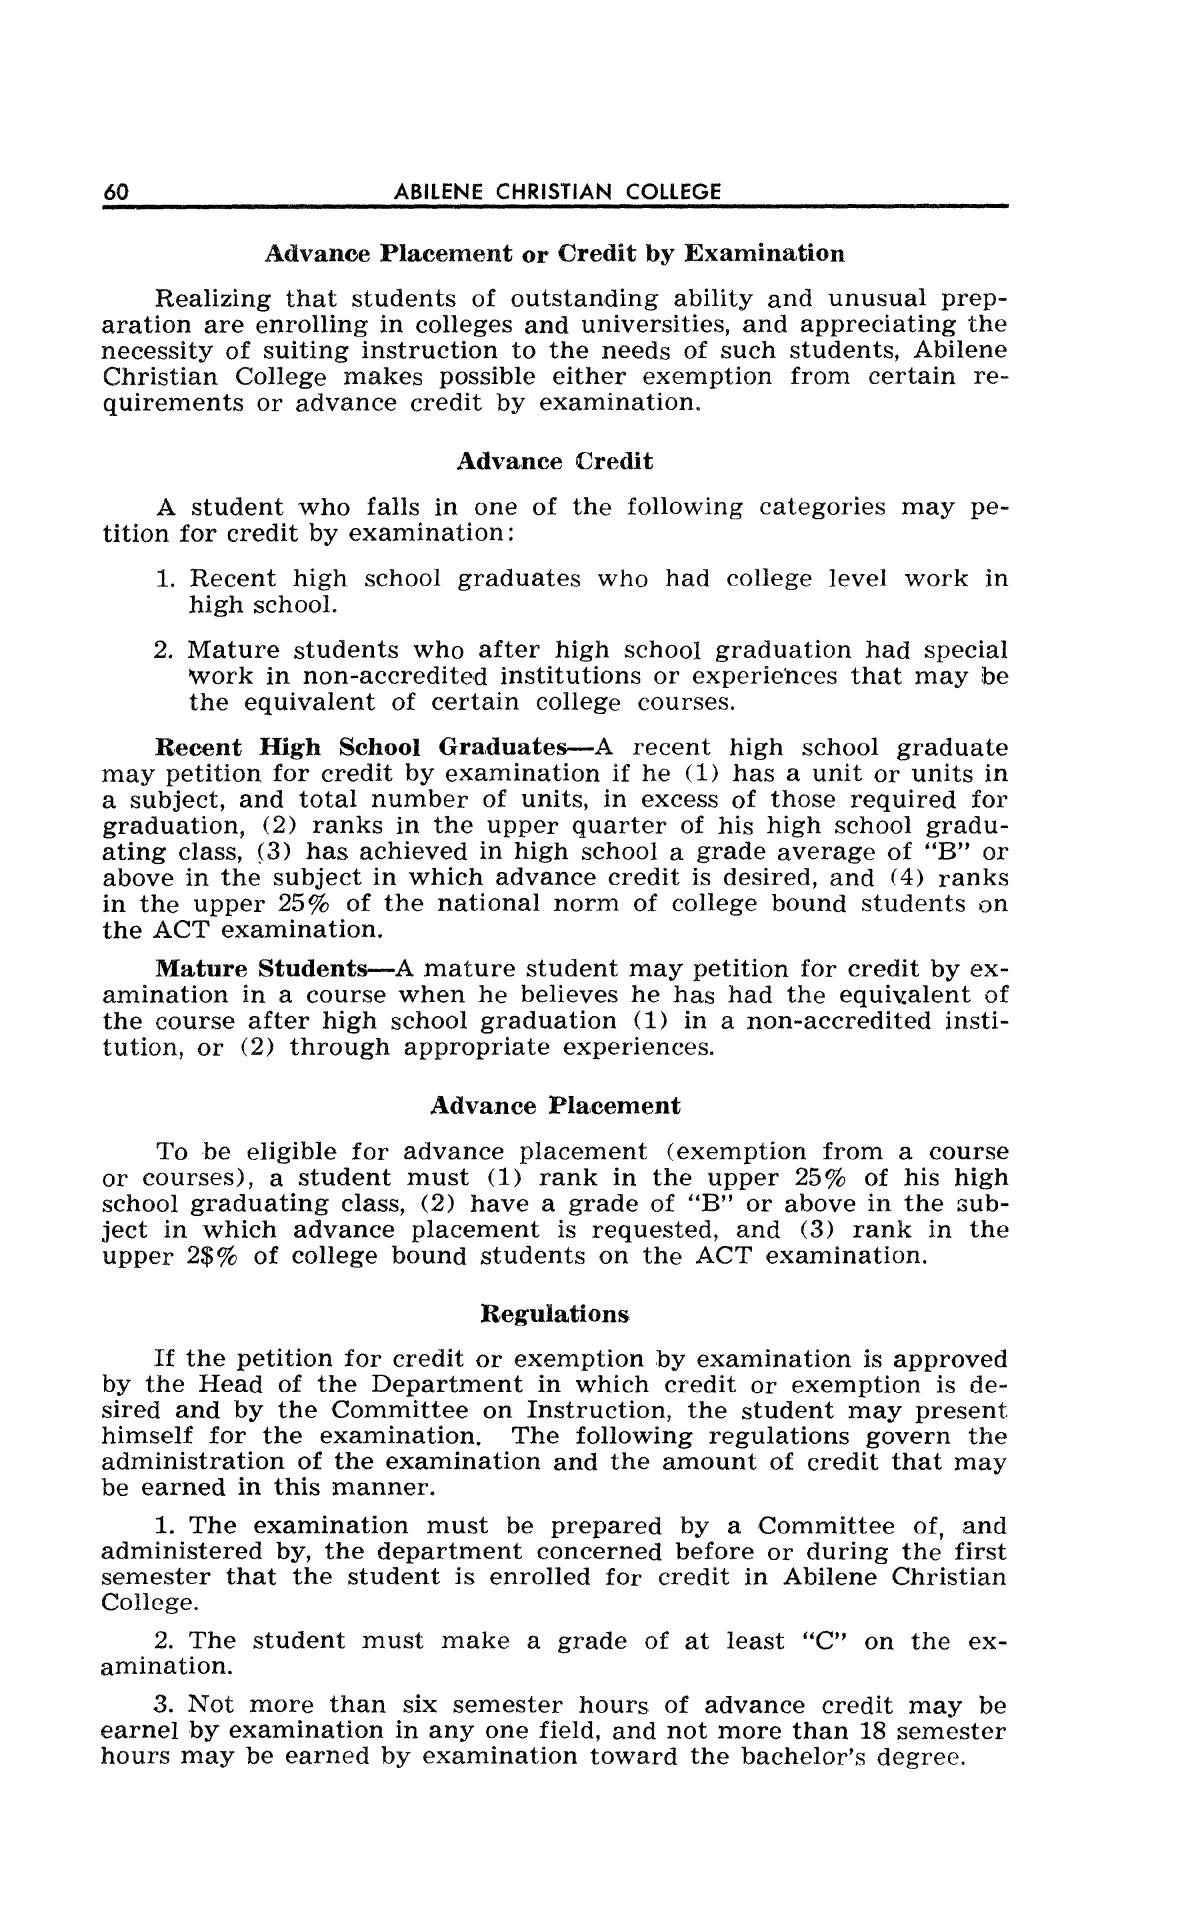 Catalog of Abilene Christian College, 1962-1963
                                                
                                                    60
                                                